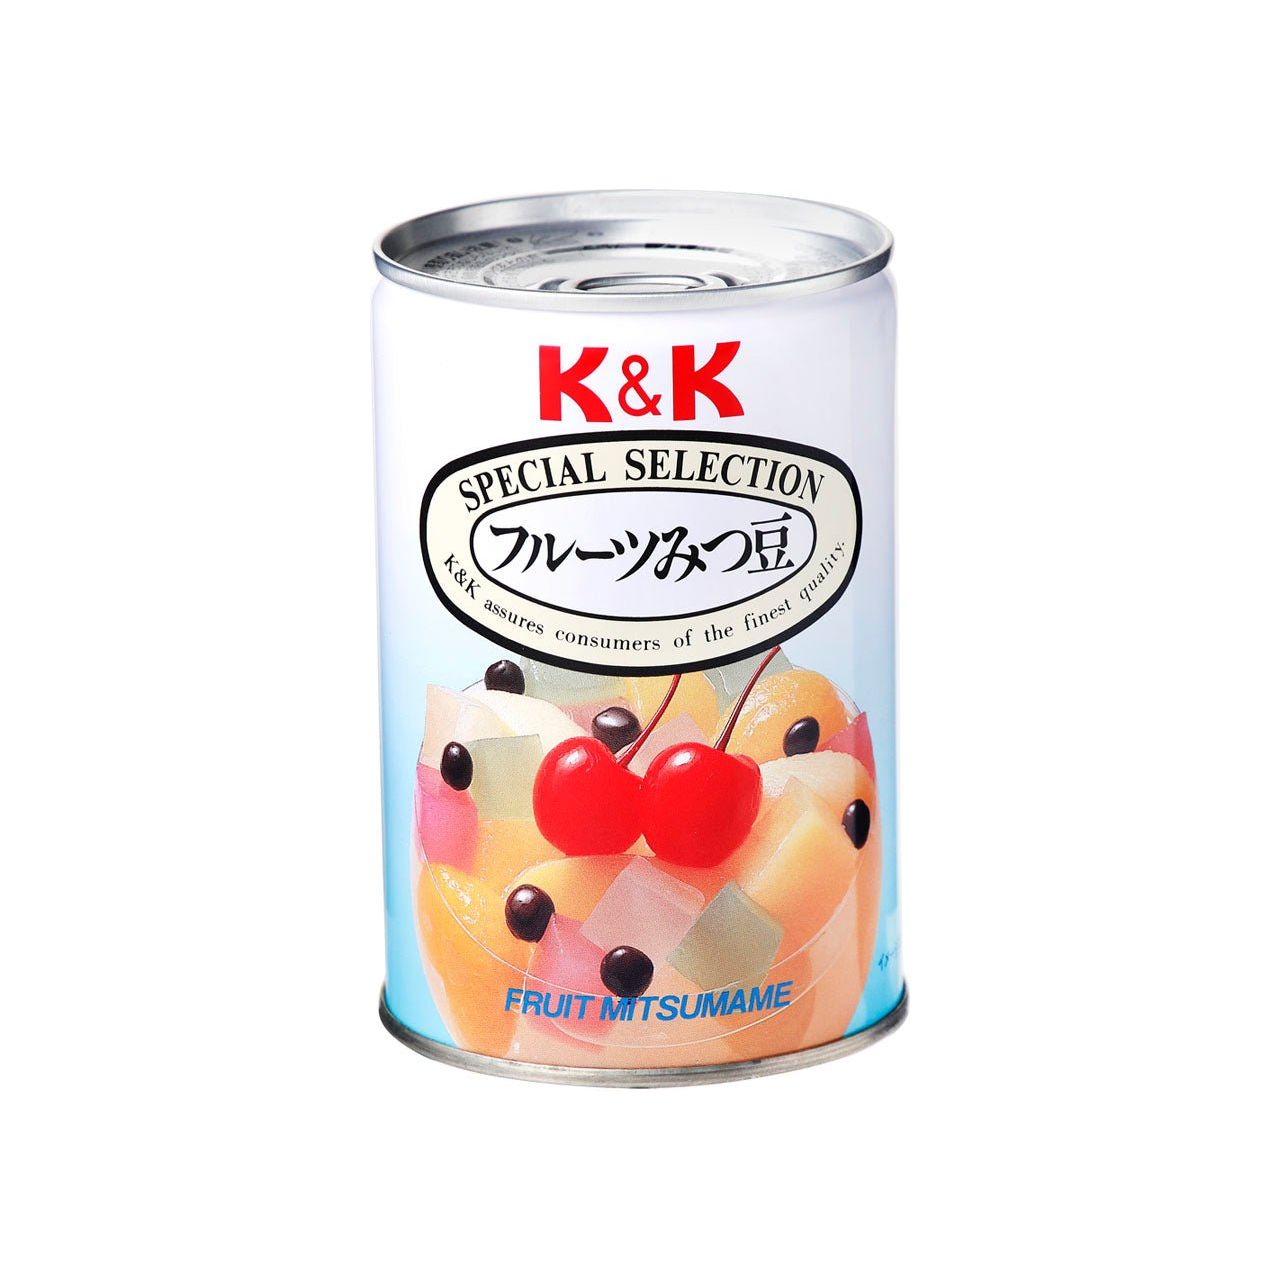 K & K 과일 미츠 콩 (5 종류의 과일, 한천, 붉은 포드)